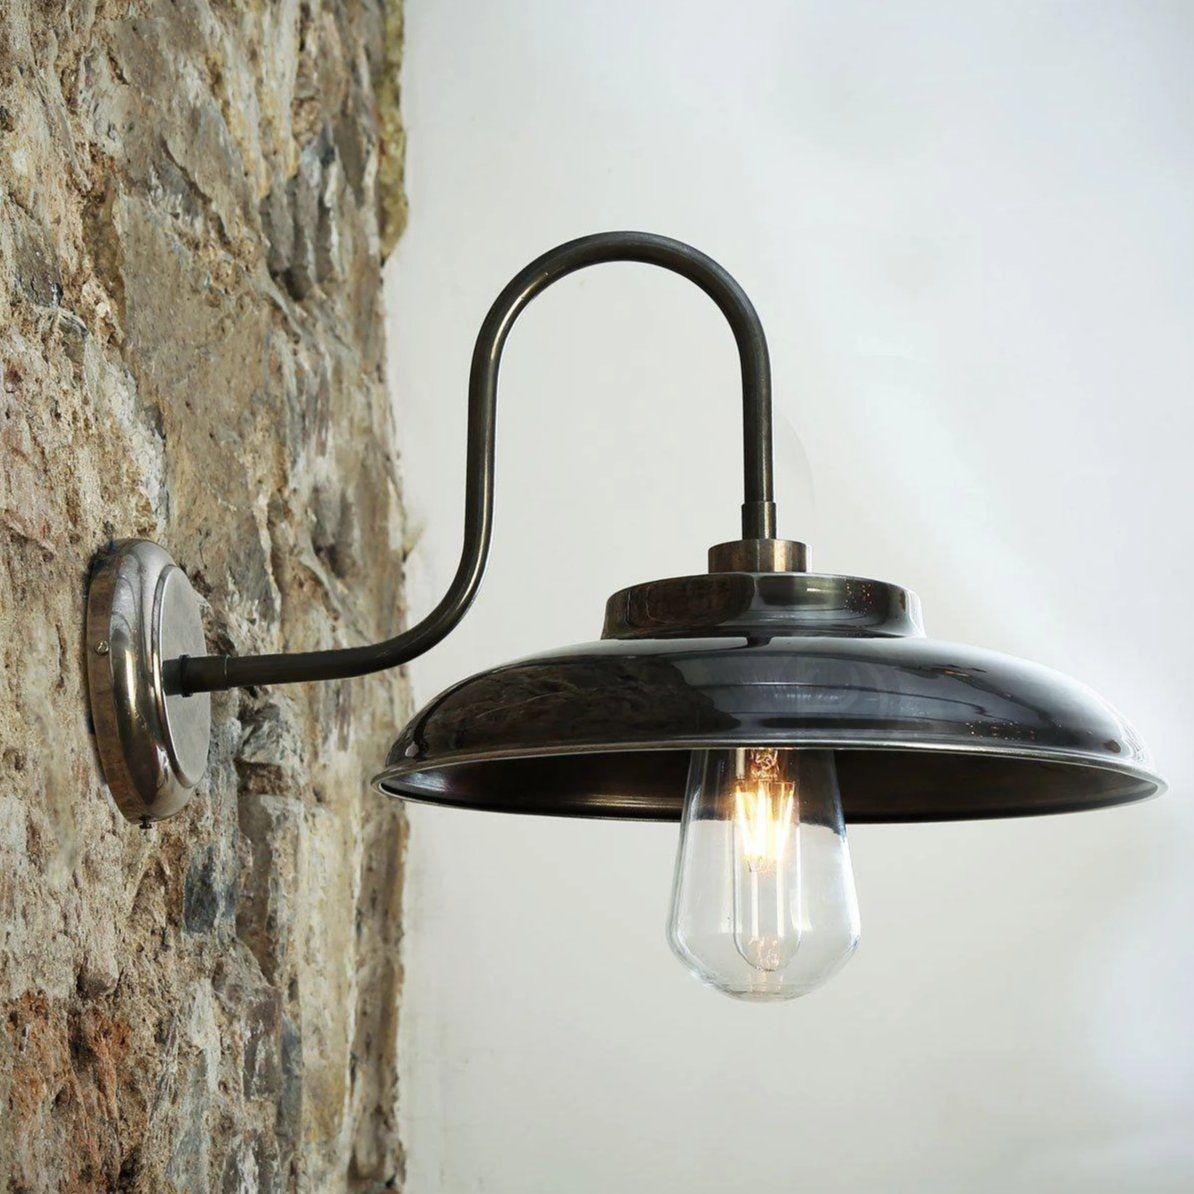 Wall lamp (Sconce) DARYA by Mullan Lighting